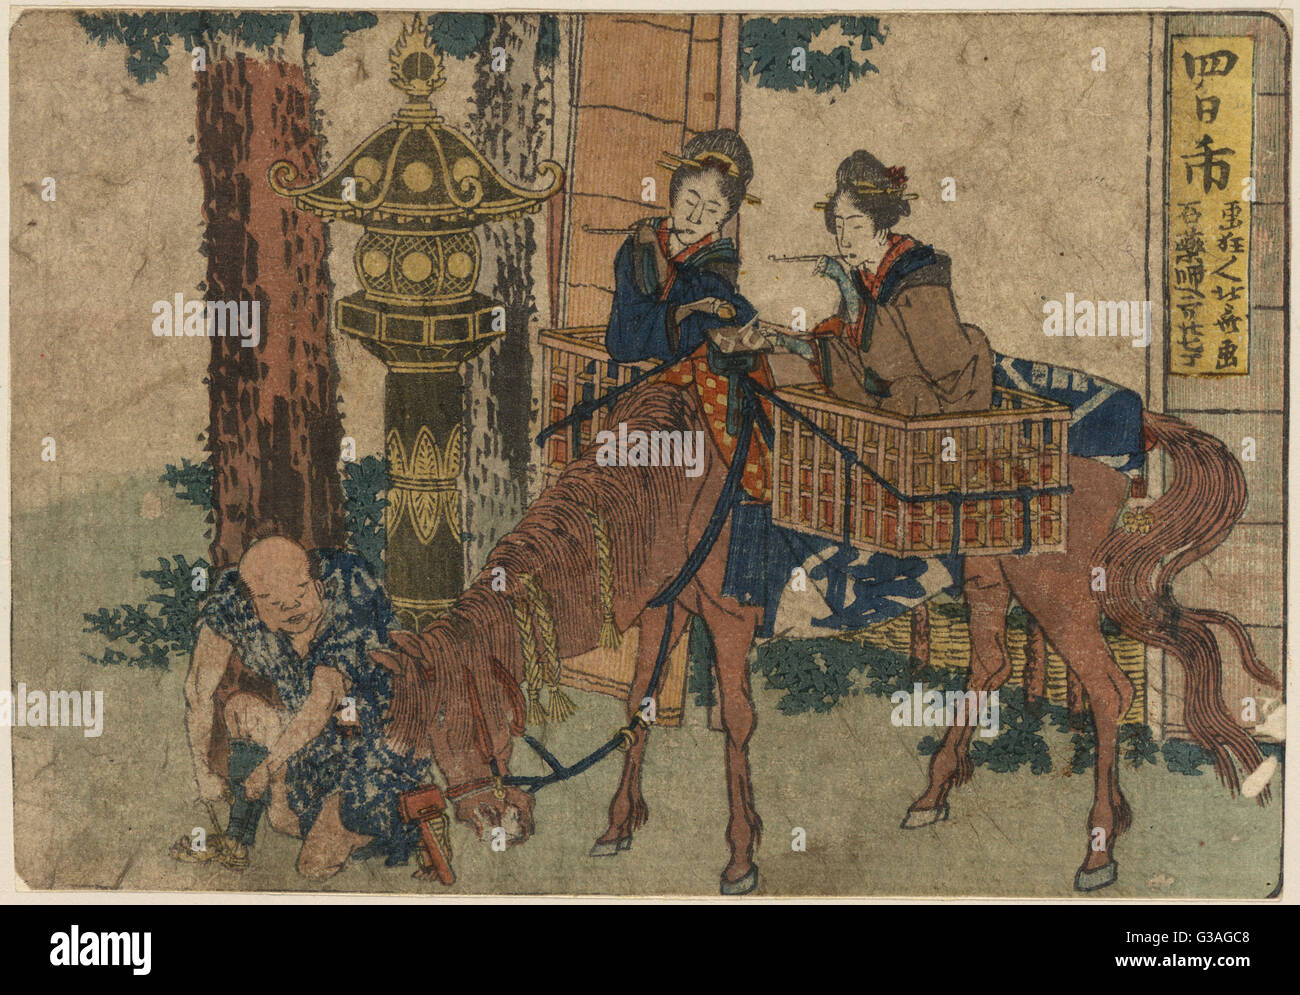 Yokkaichi. Imprimer montre deux voyageurs femmes pipes, assis dans des paniers sur un cheval, avec un accompagnateur, à un lieu de culte. Date 1804. Banque D'Images